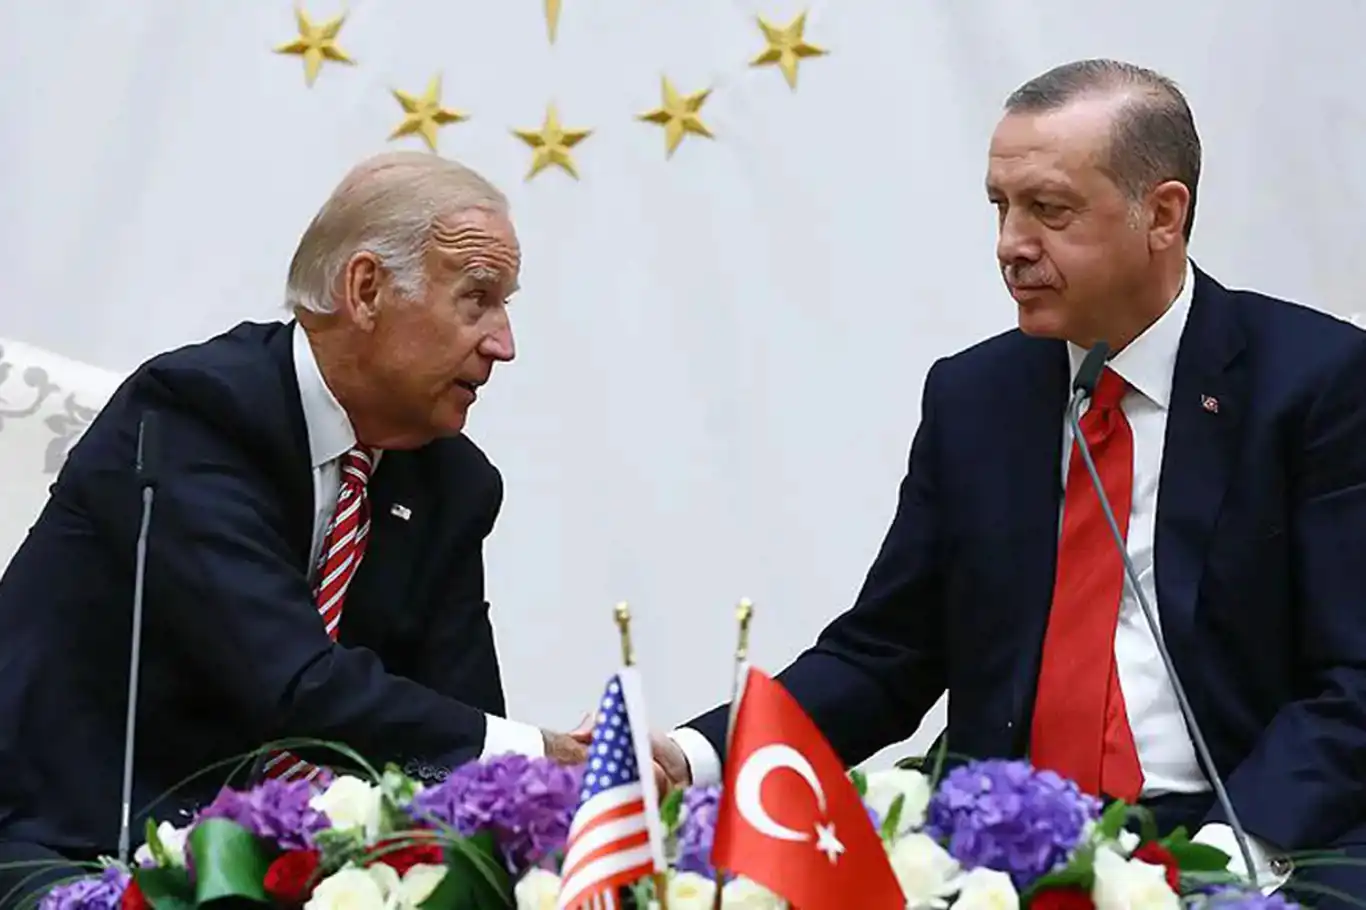 Beyaz Saray'dan Erdoğan açıklaması: Planlanmış bir şey yok